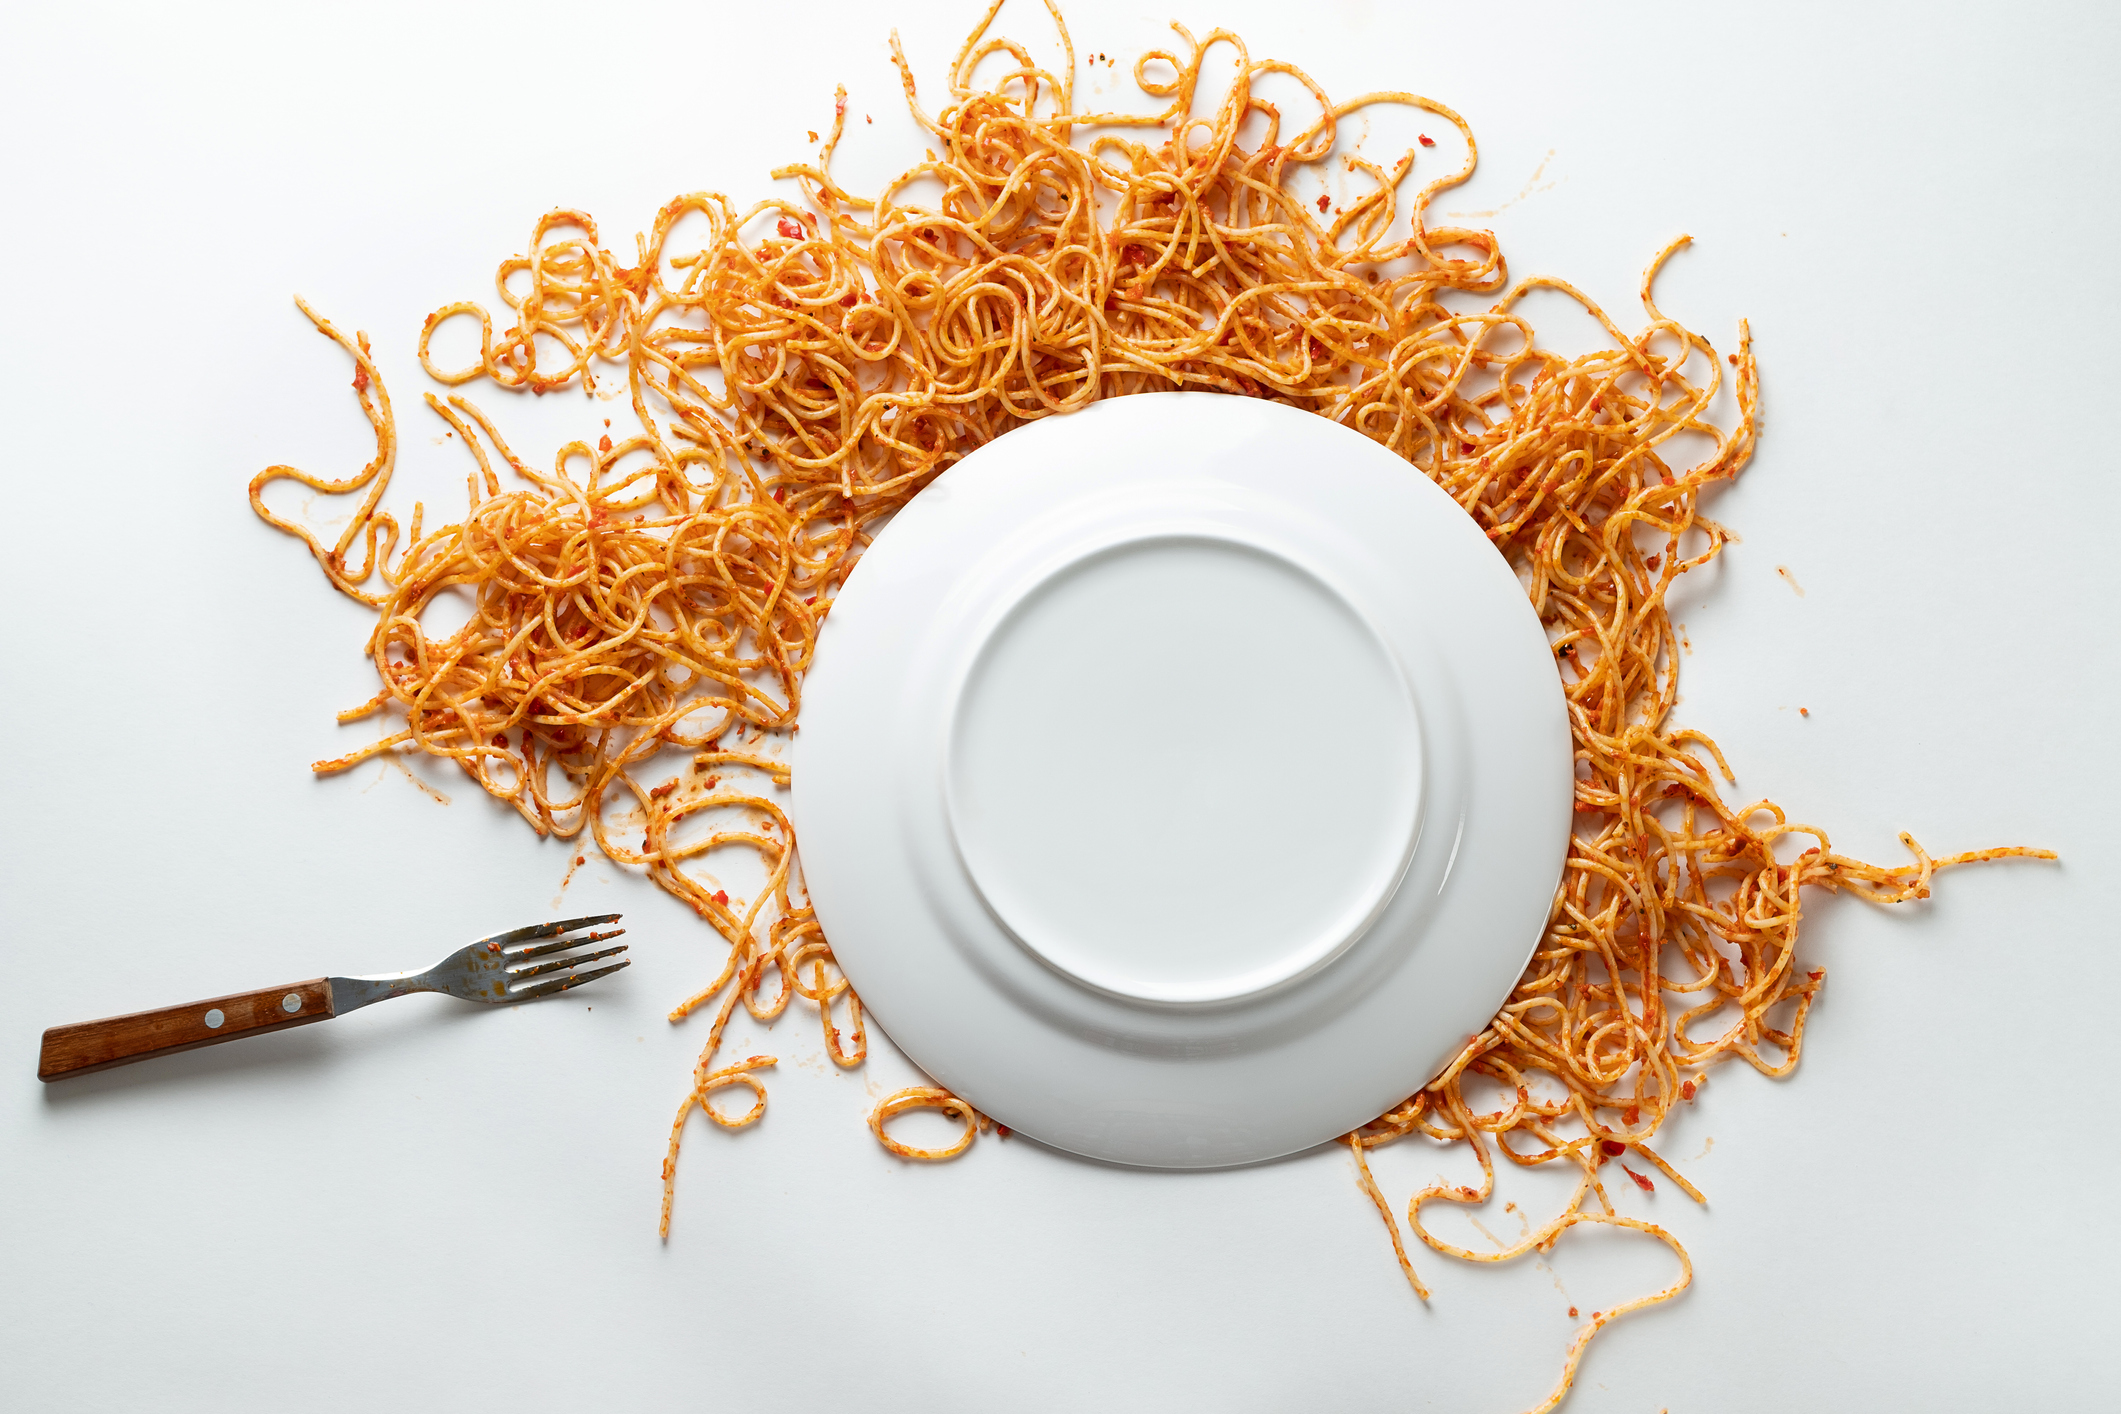 옆에 포크가 있는 스파게티의 타락한 흰색 세라믹 접시.  토마토 소스의 파스타 볼로네제는 흰색 배경이나 테이블에 흩어져 있습니다.  채식과 완전 채식의 개념.  음식 배경.  텍스트 공간의 사본.